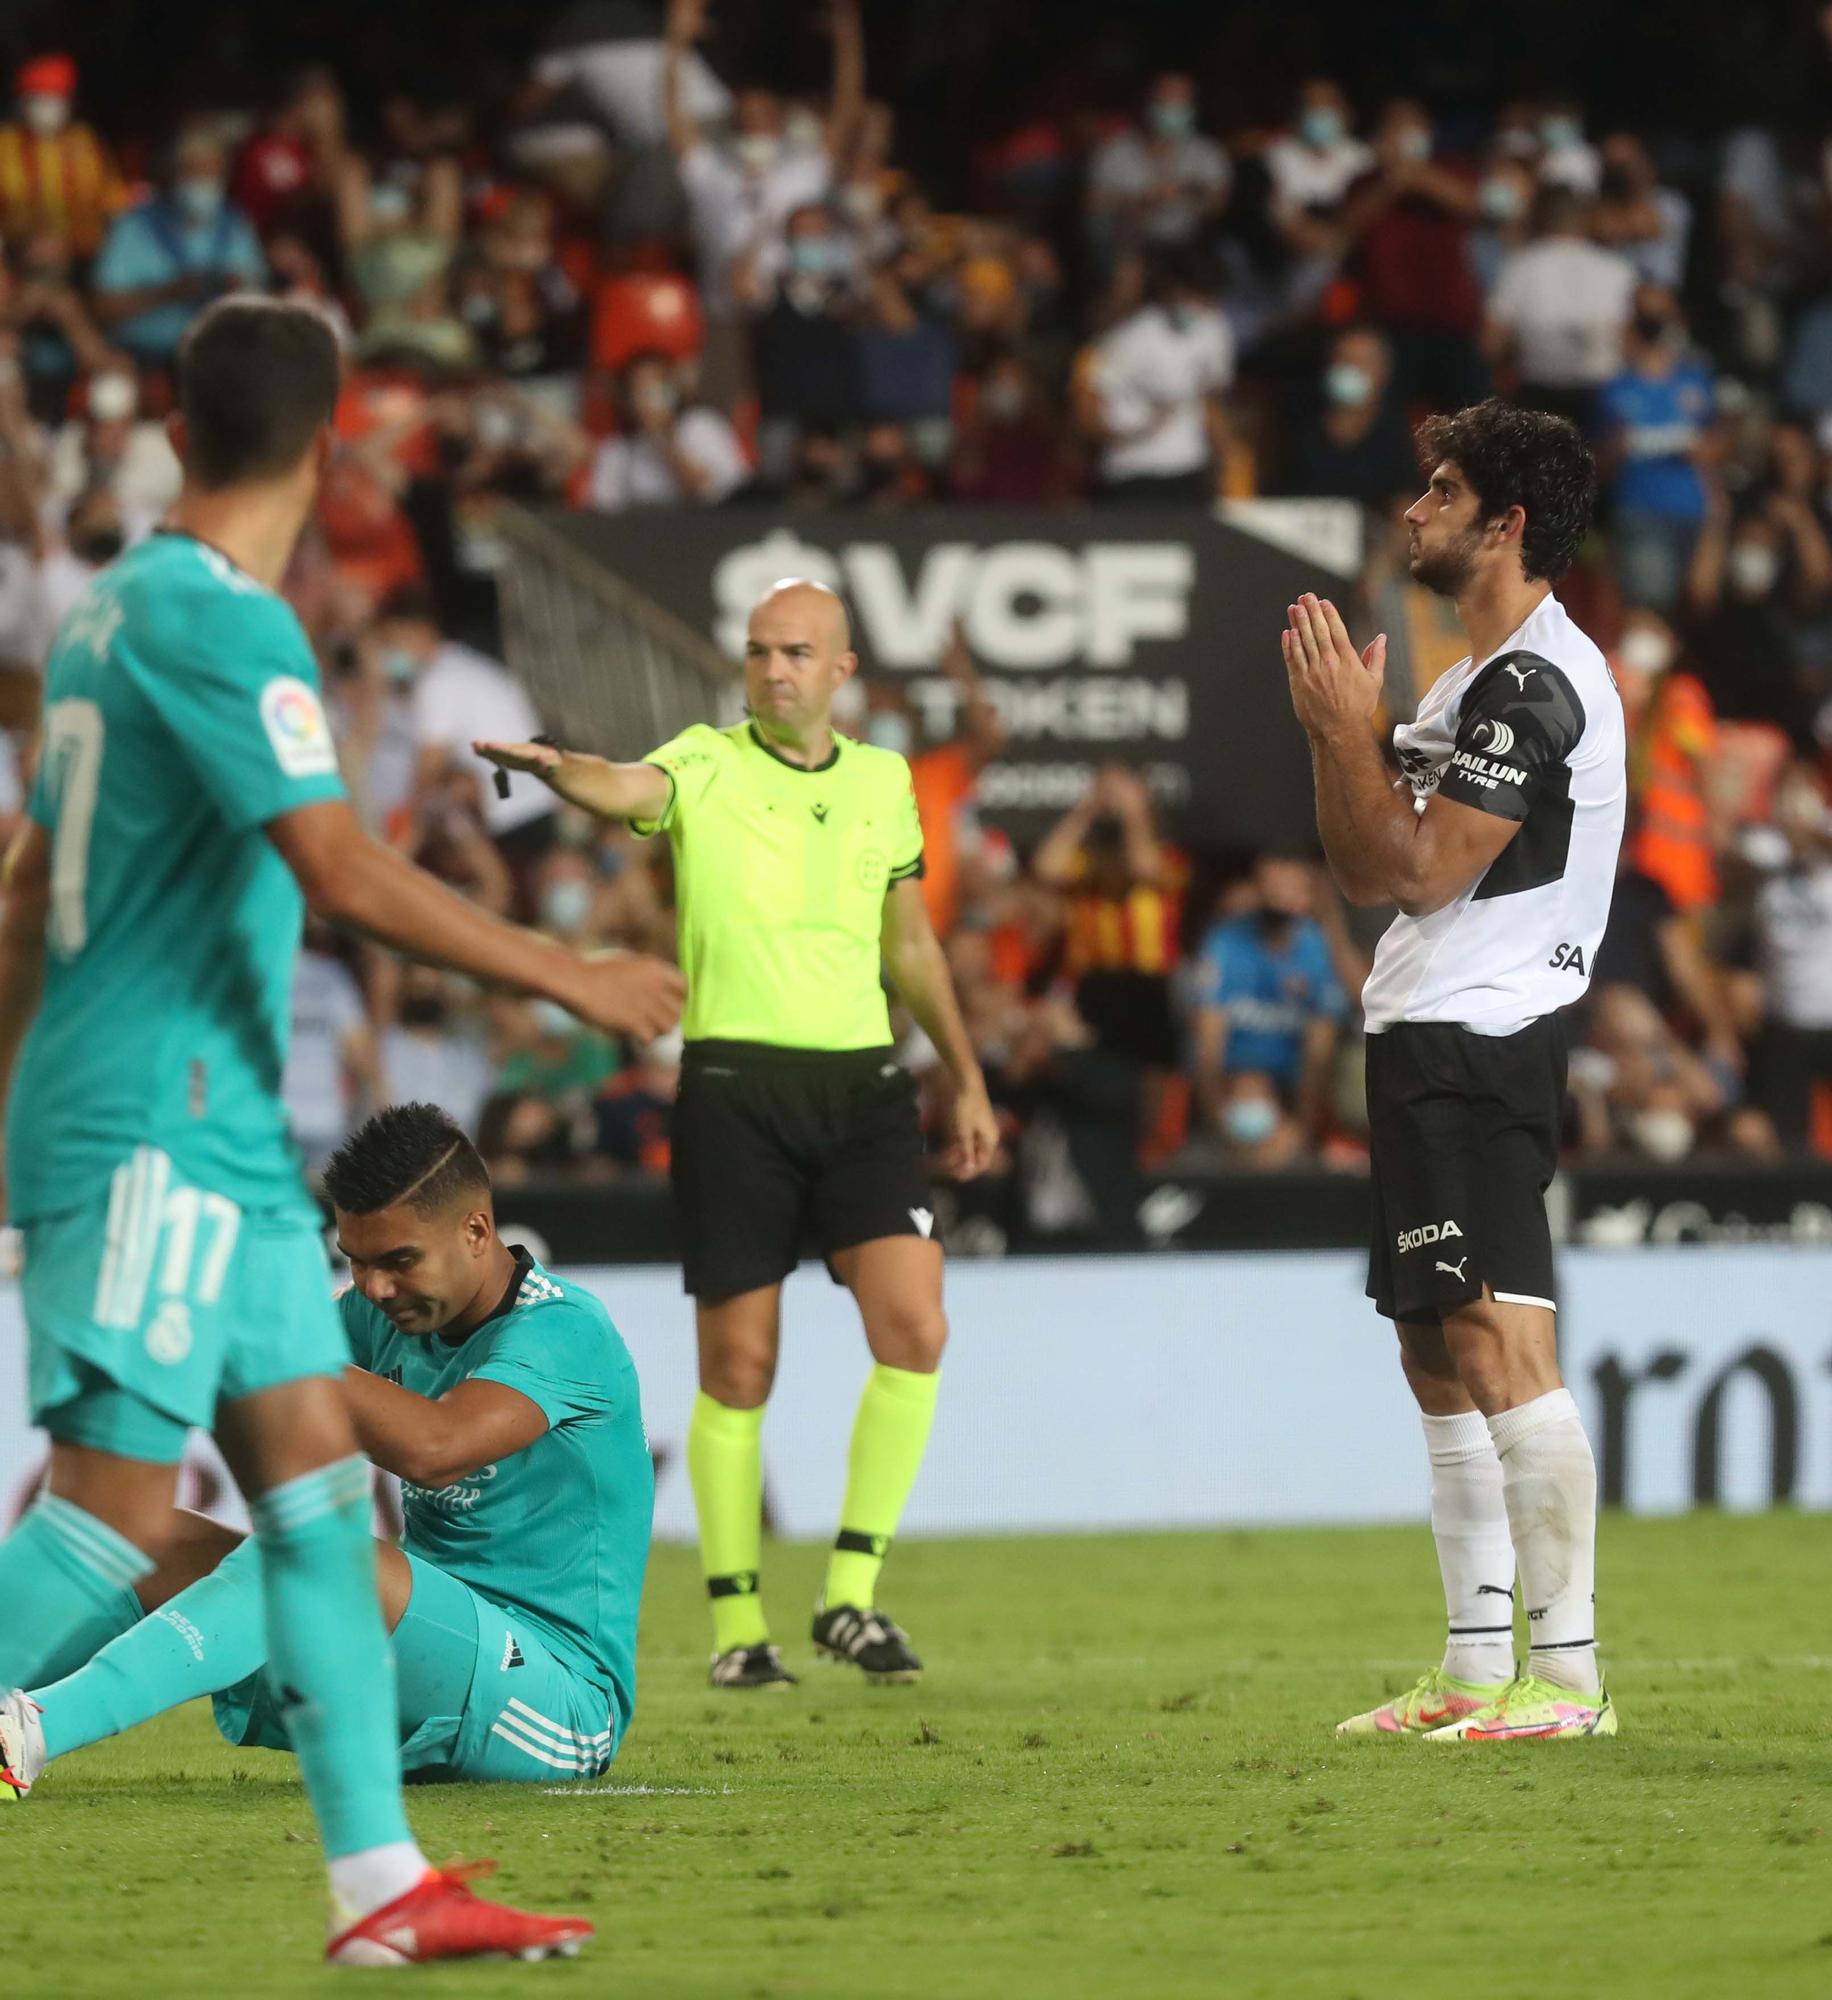 Las imágenes del partido entre el Valencia CF y el Real Madrid